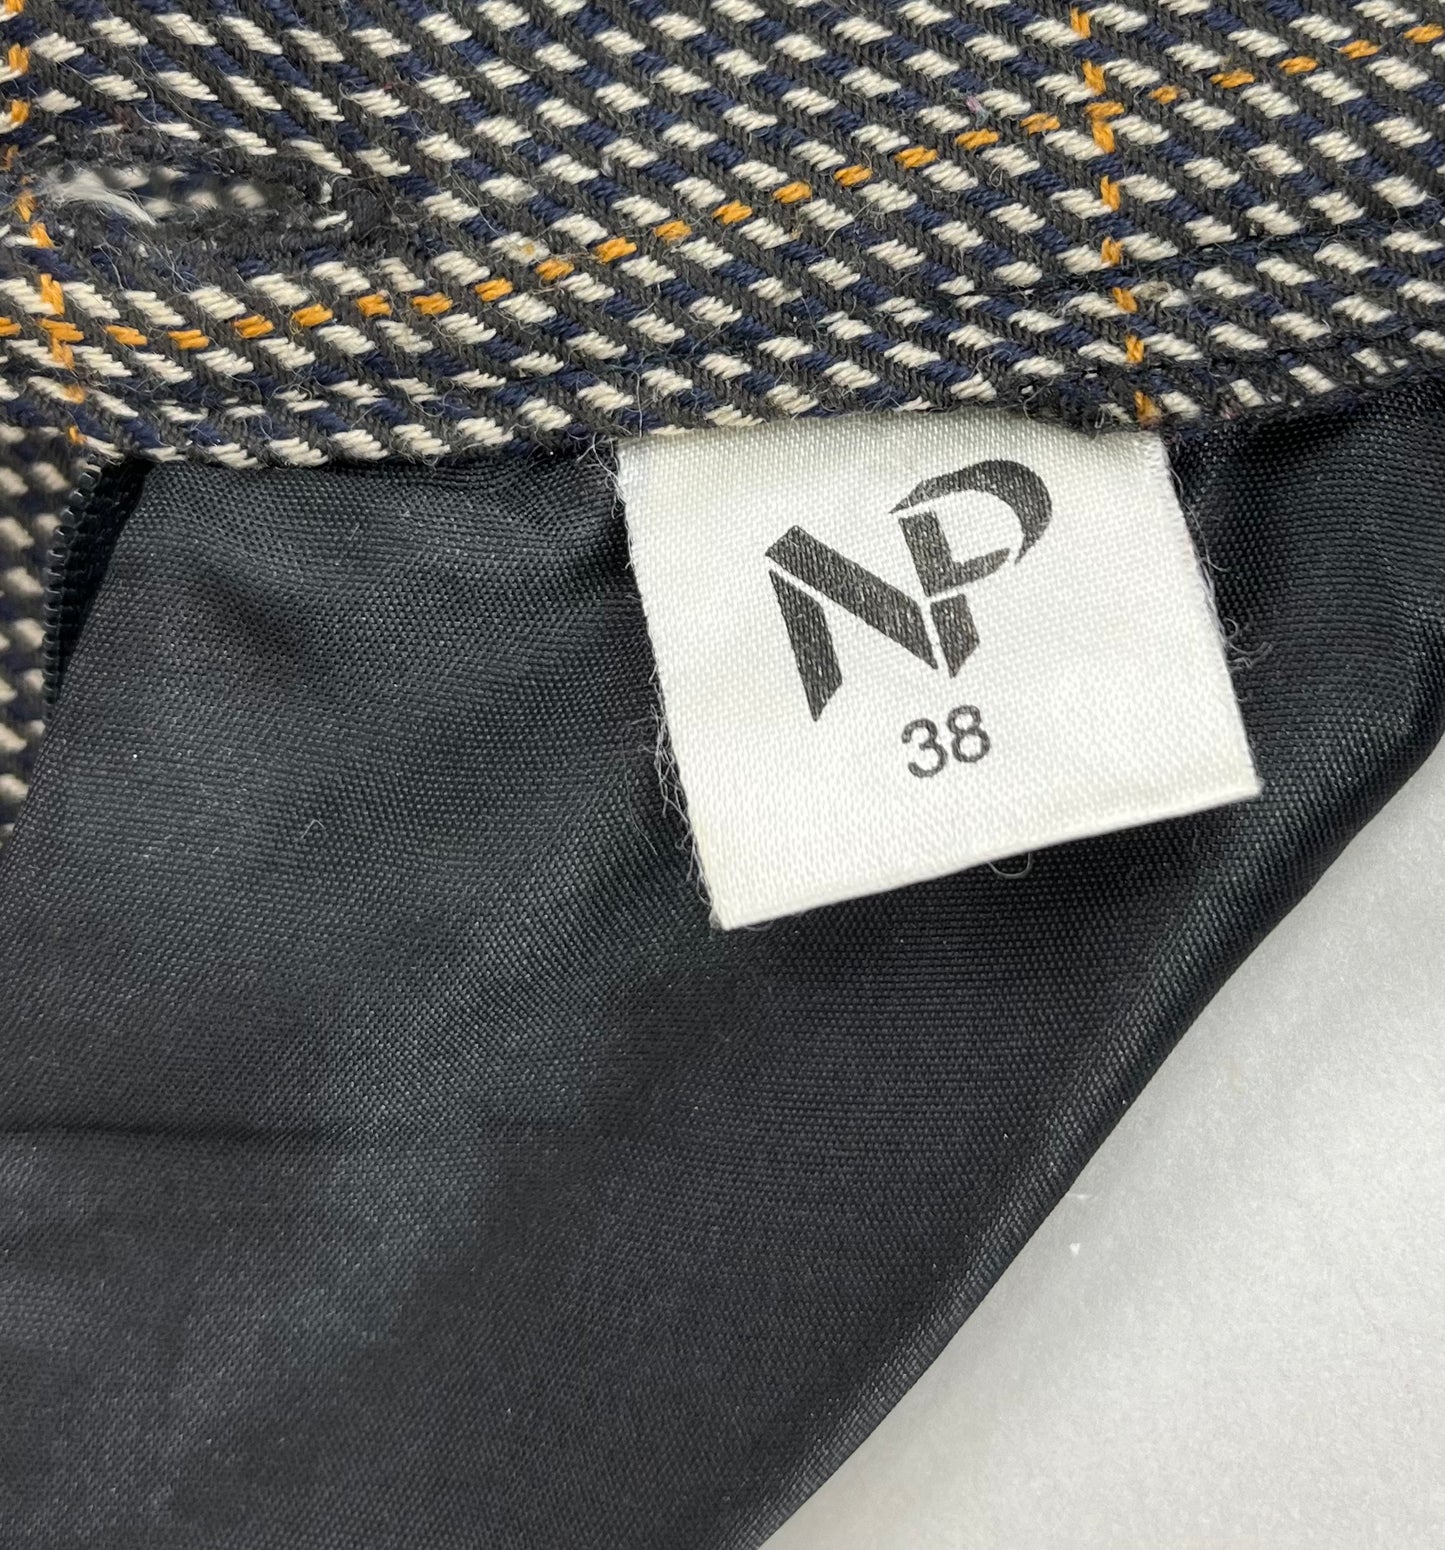 NP, ruudullinen villasekoitehame, 90-luku, vyöt.ymp. 72-80cm, kokoarvio 38